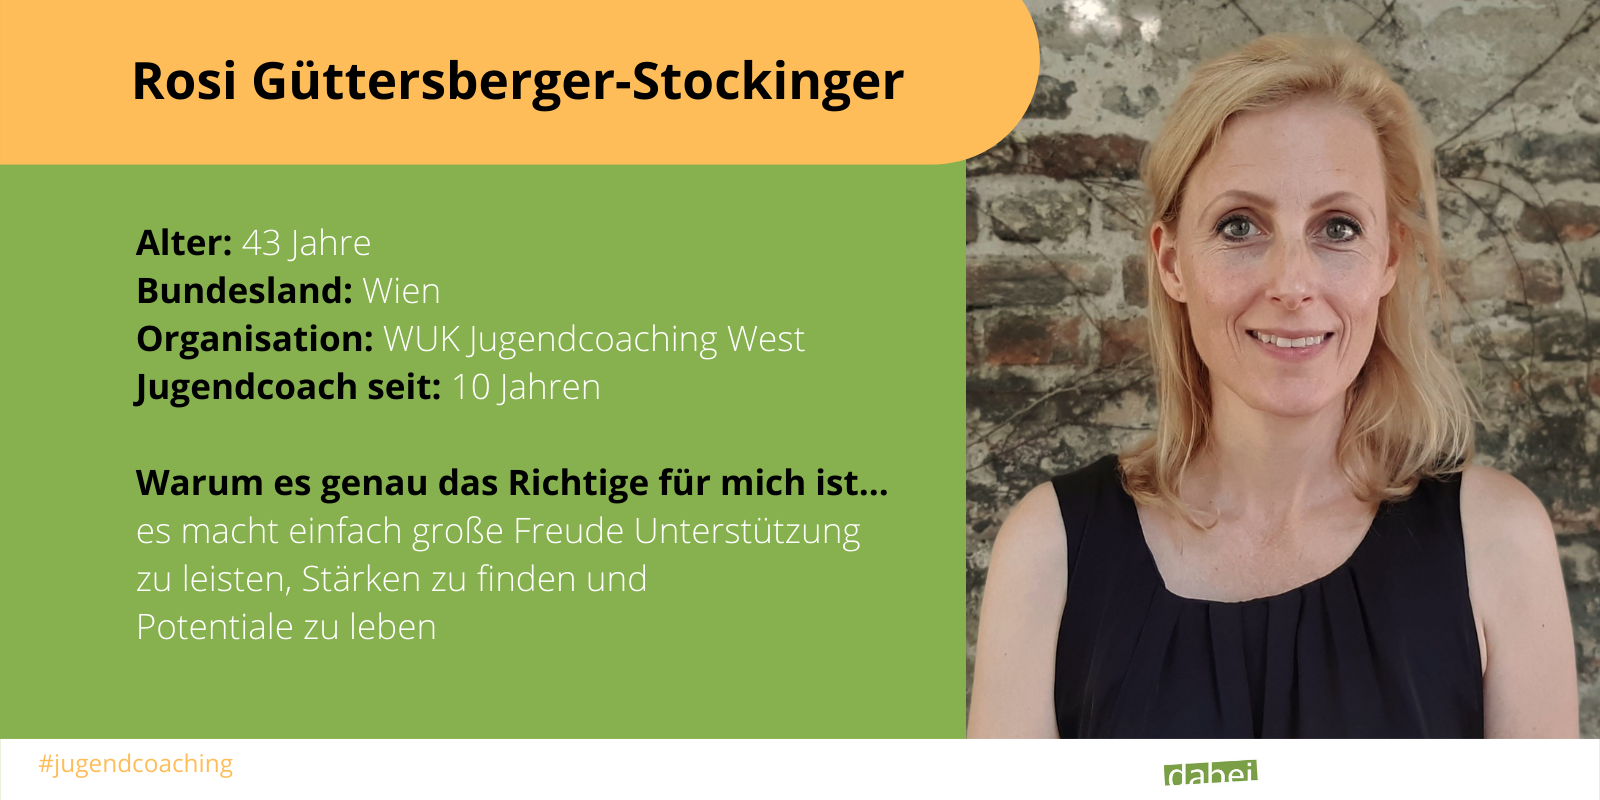 steckbrief-rosi-guettersberger-stockinger